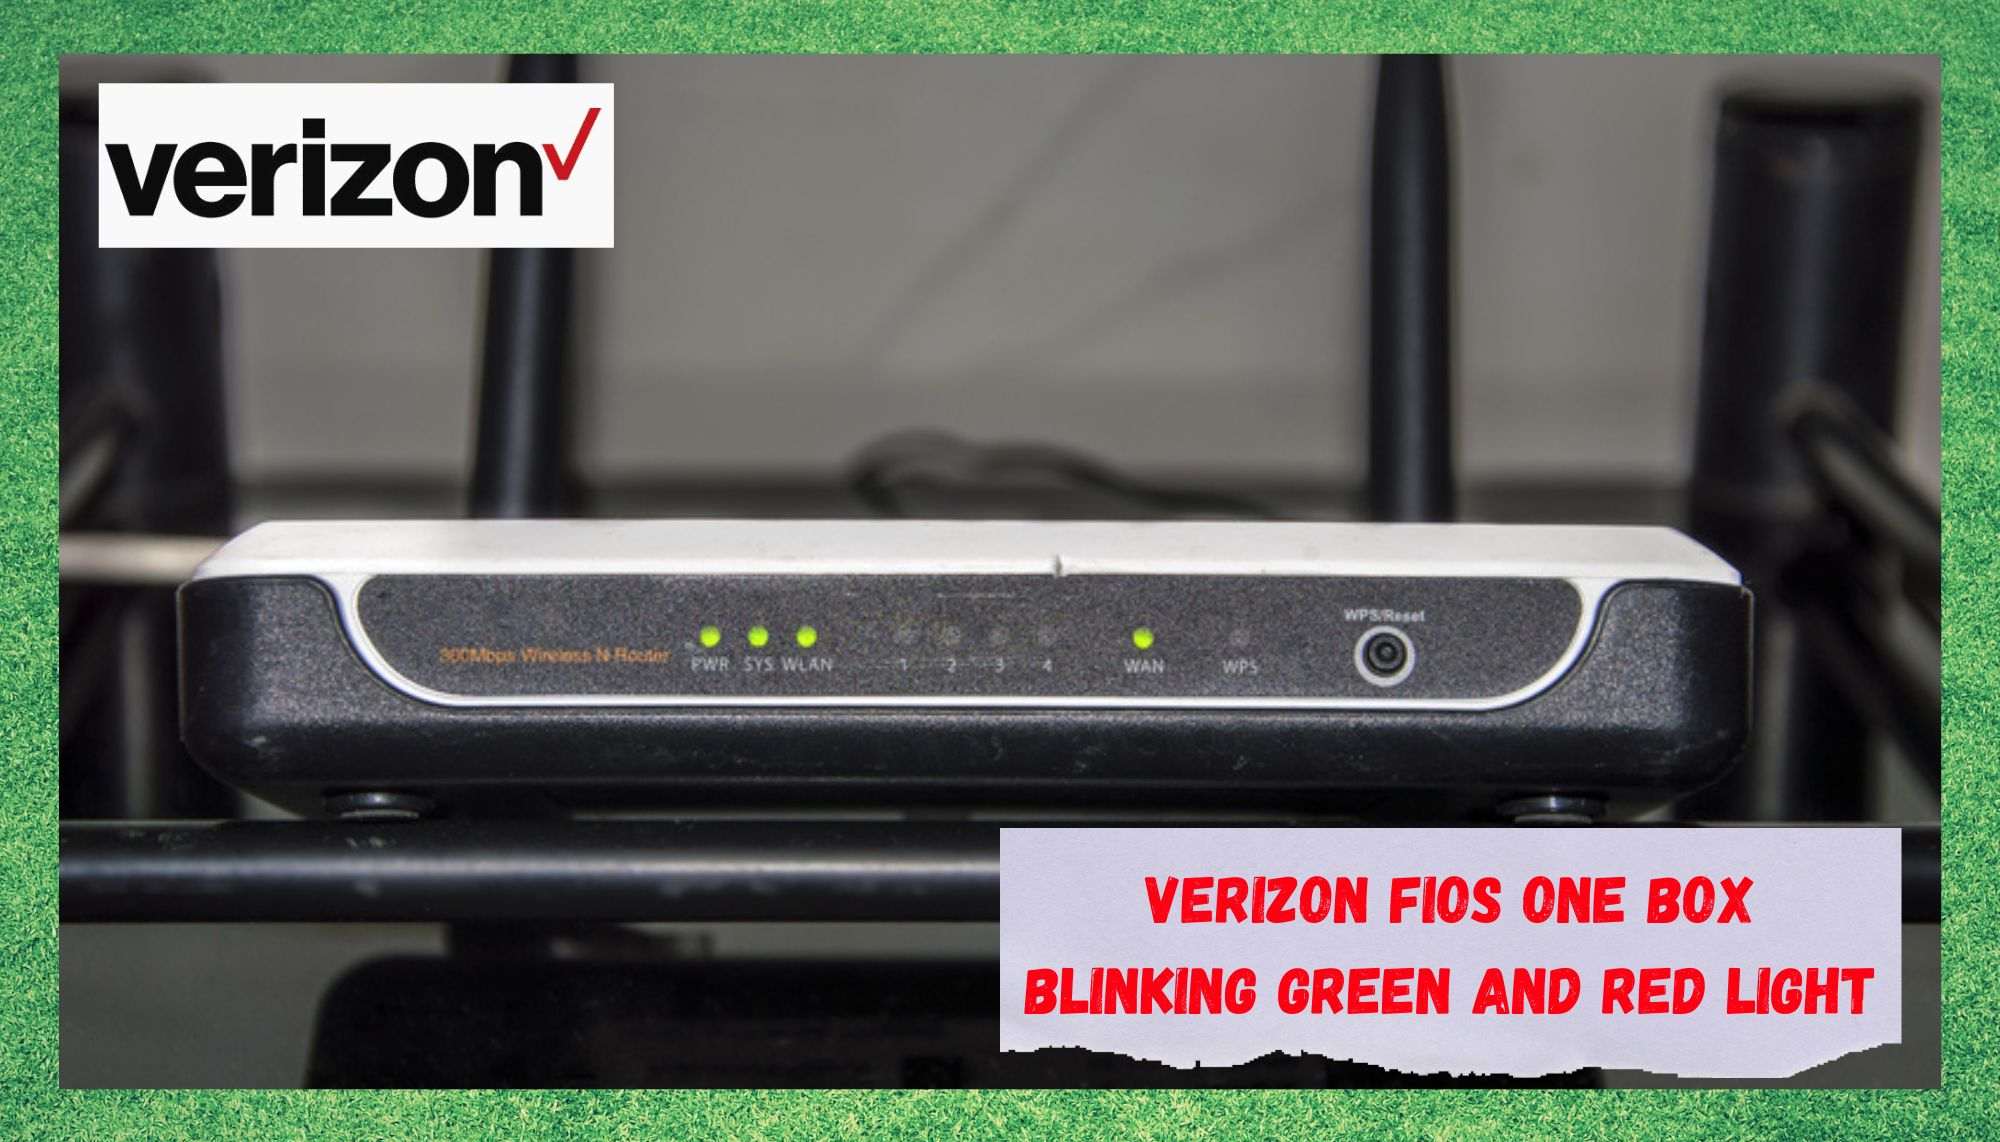 Verizon FiOS One Box yashil va qizil chiroq miltillashining 2 sababi